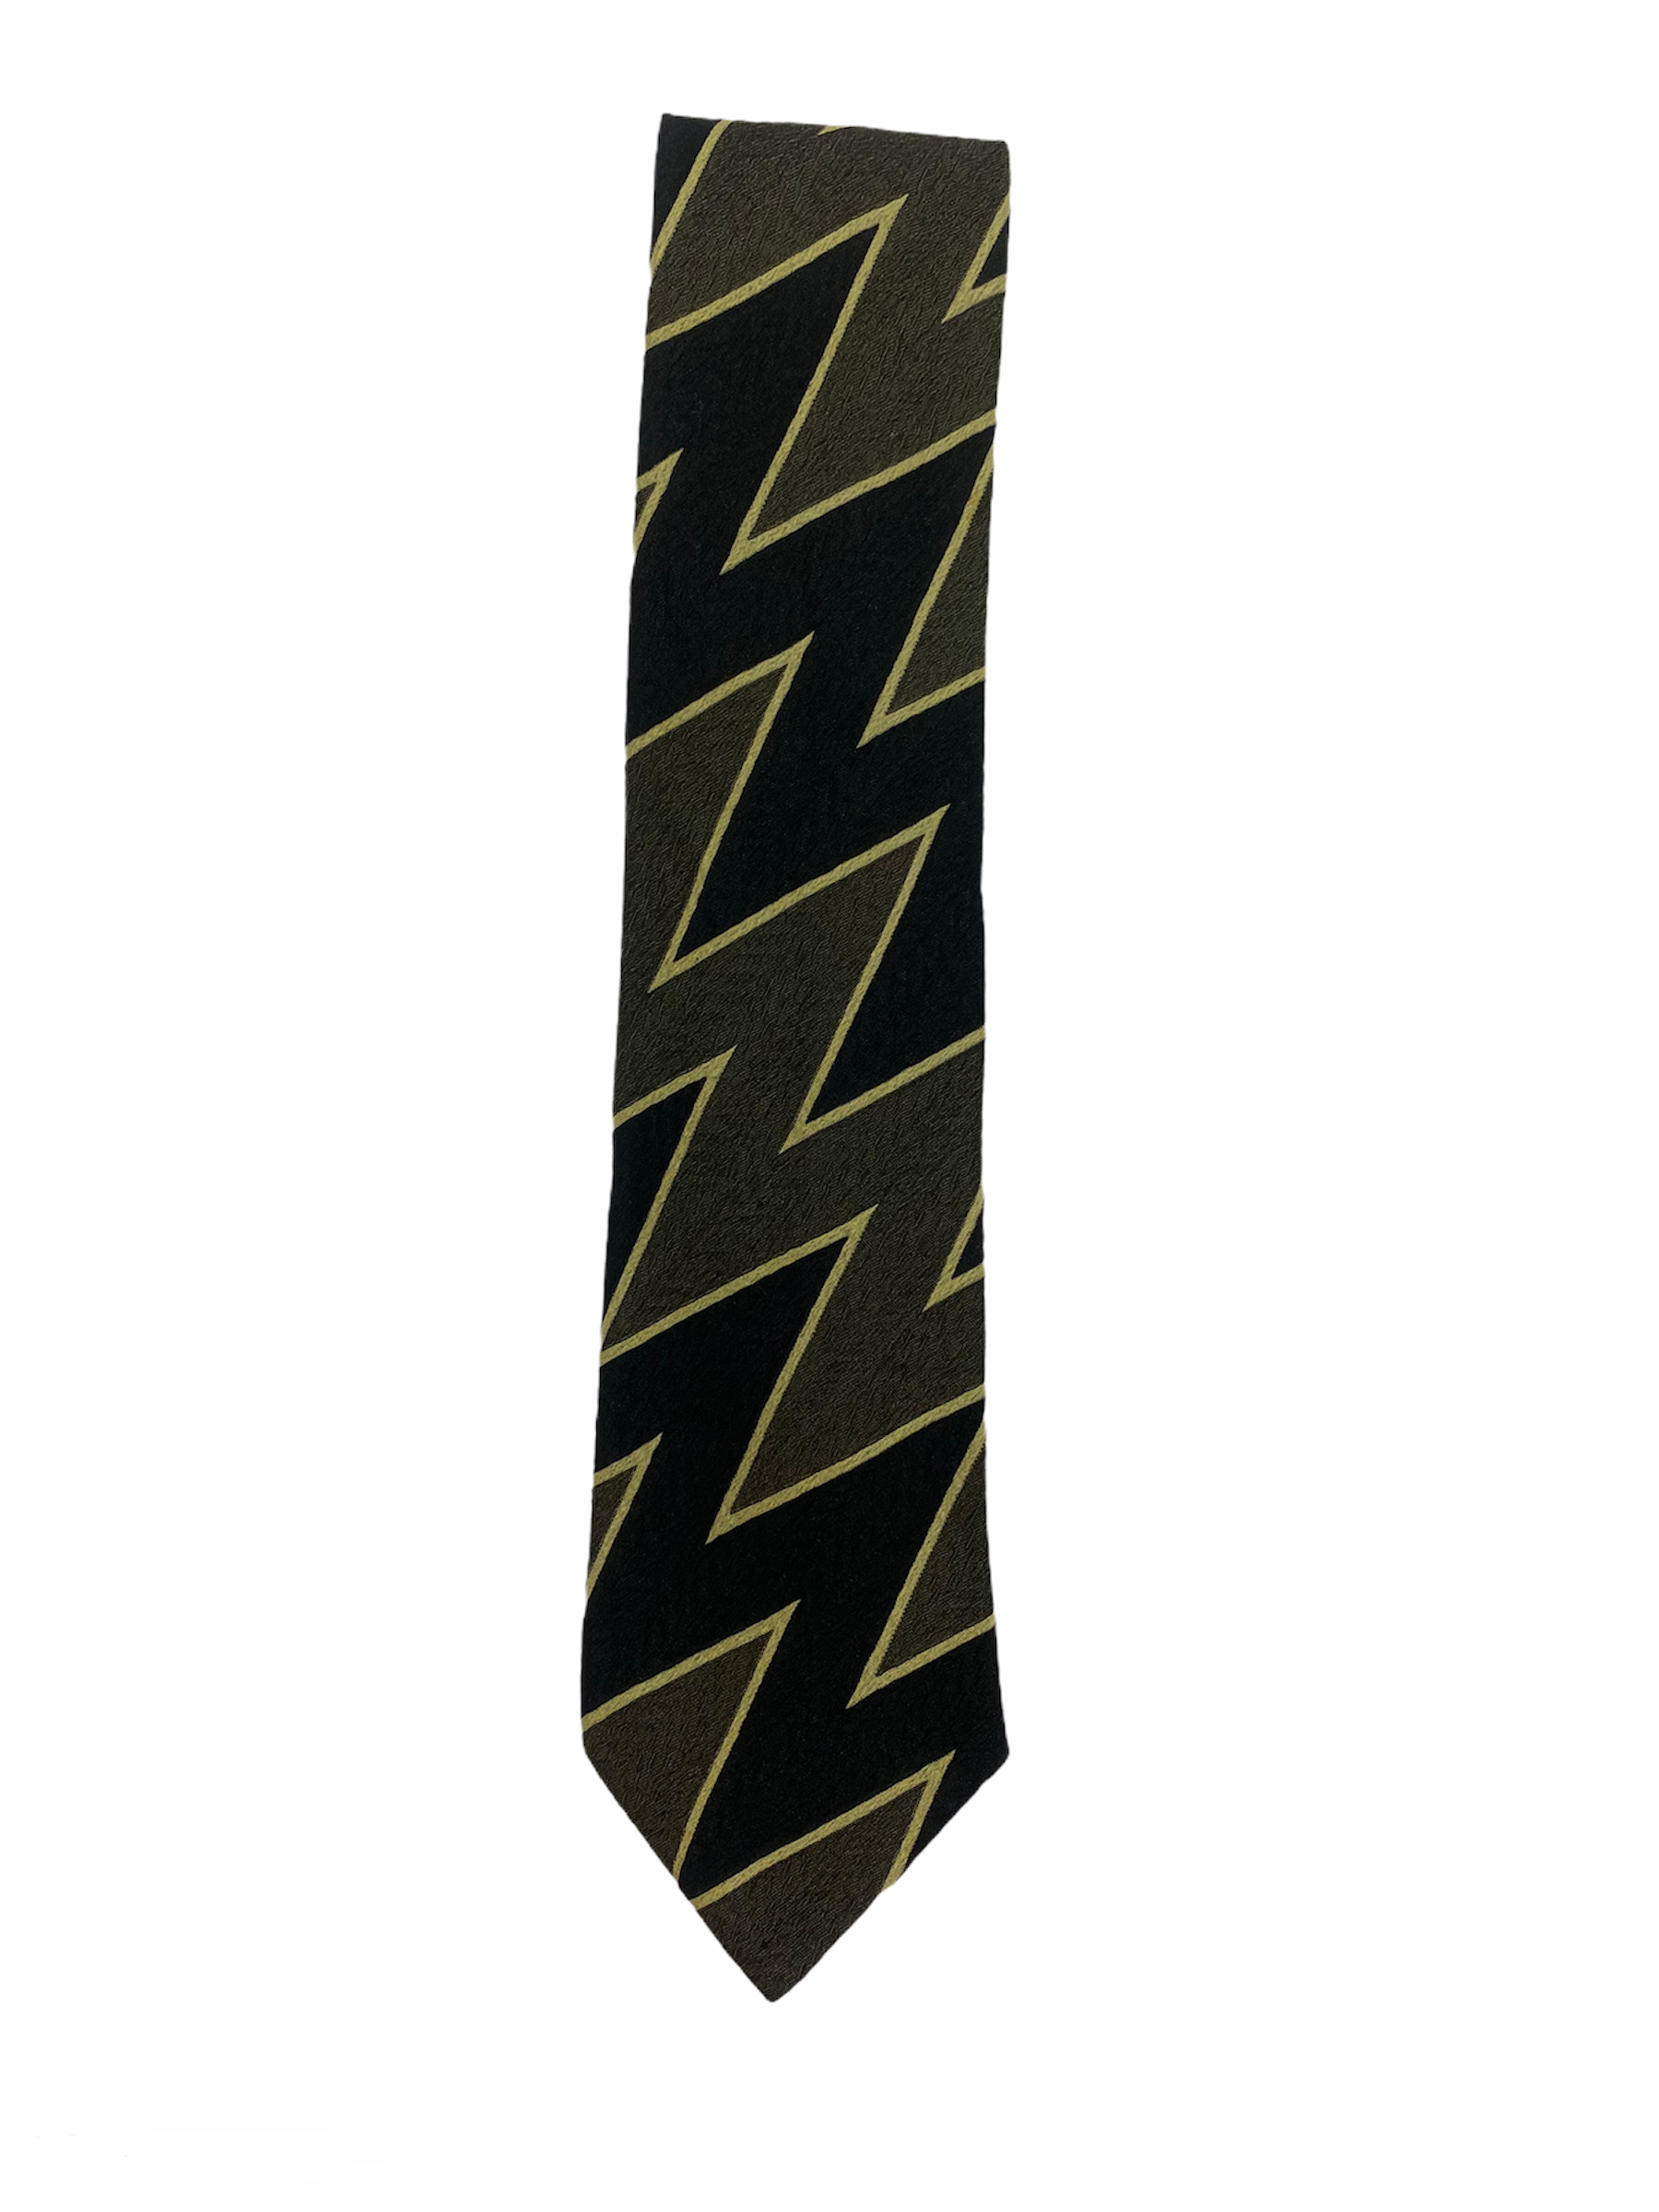 Cravatte HUGO BOSS noir avec motif zigzag jaune 100% soie.